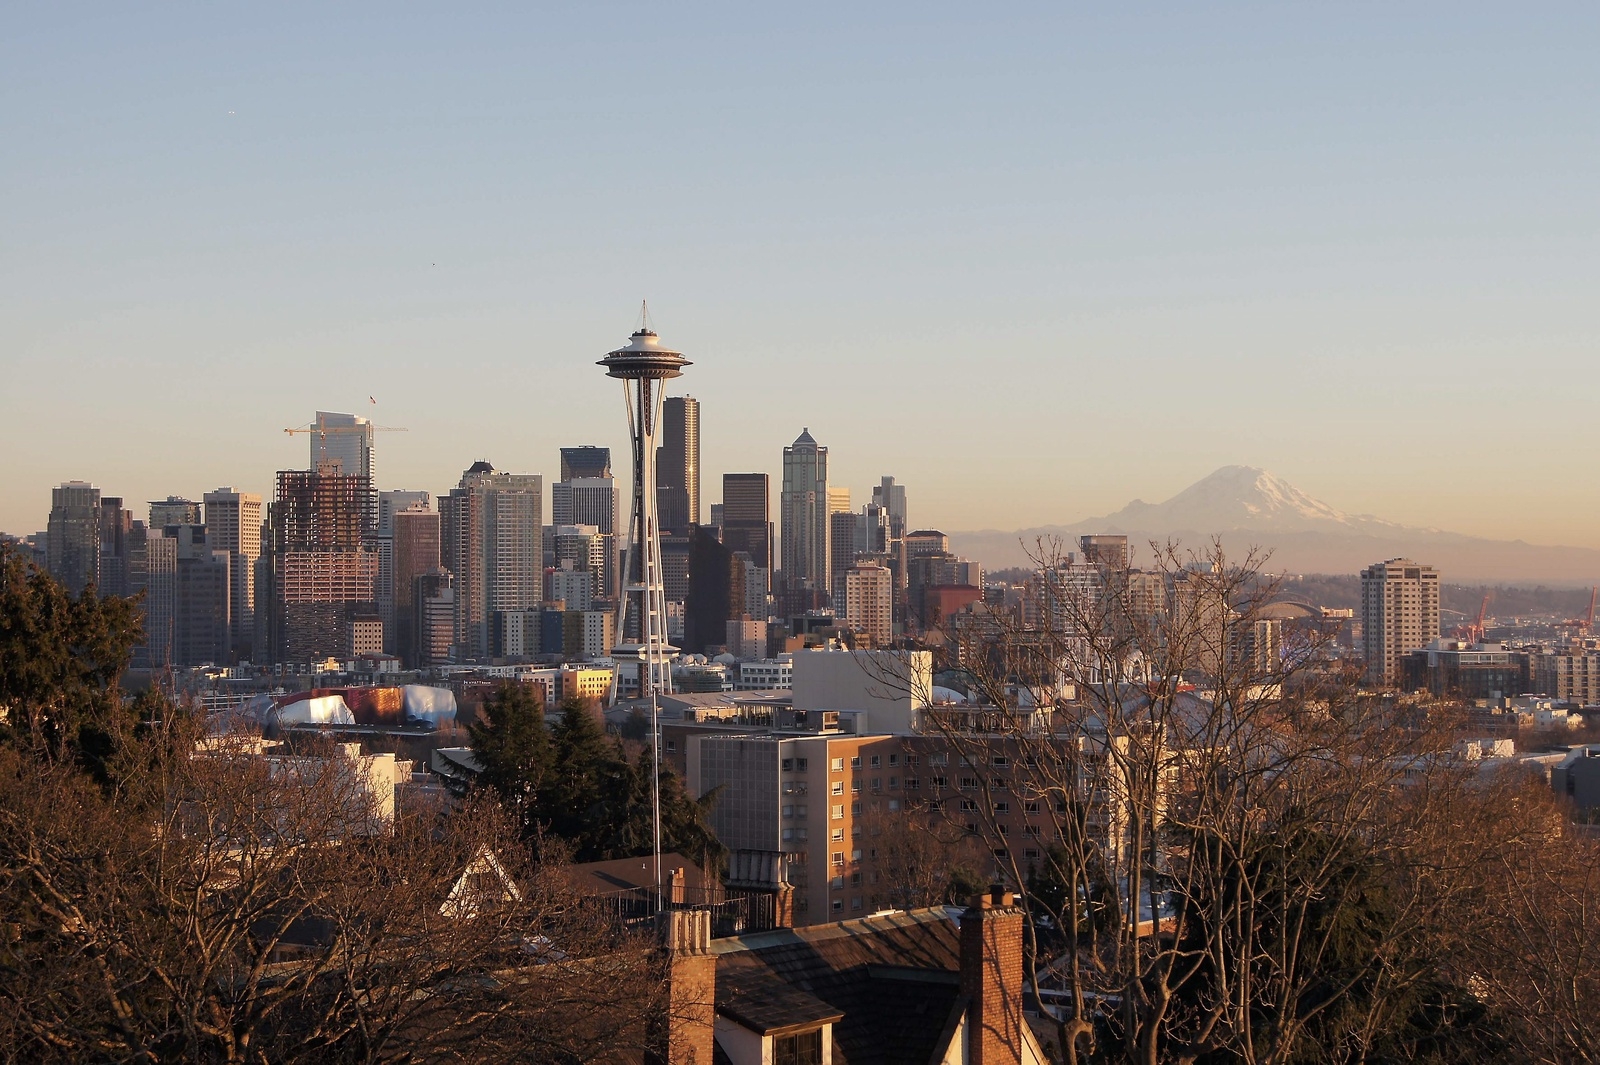 Seattle ligger i nordvästra USA, nära gränsen till Kanada. 2015 bodde det 668 342 invånare i staden. ”The Space Needle” är ett av västkustens mest berömda landmärken. 
Privat bild